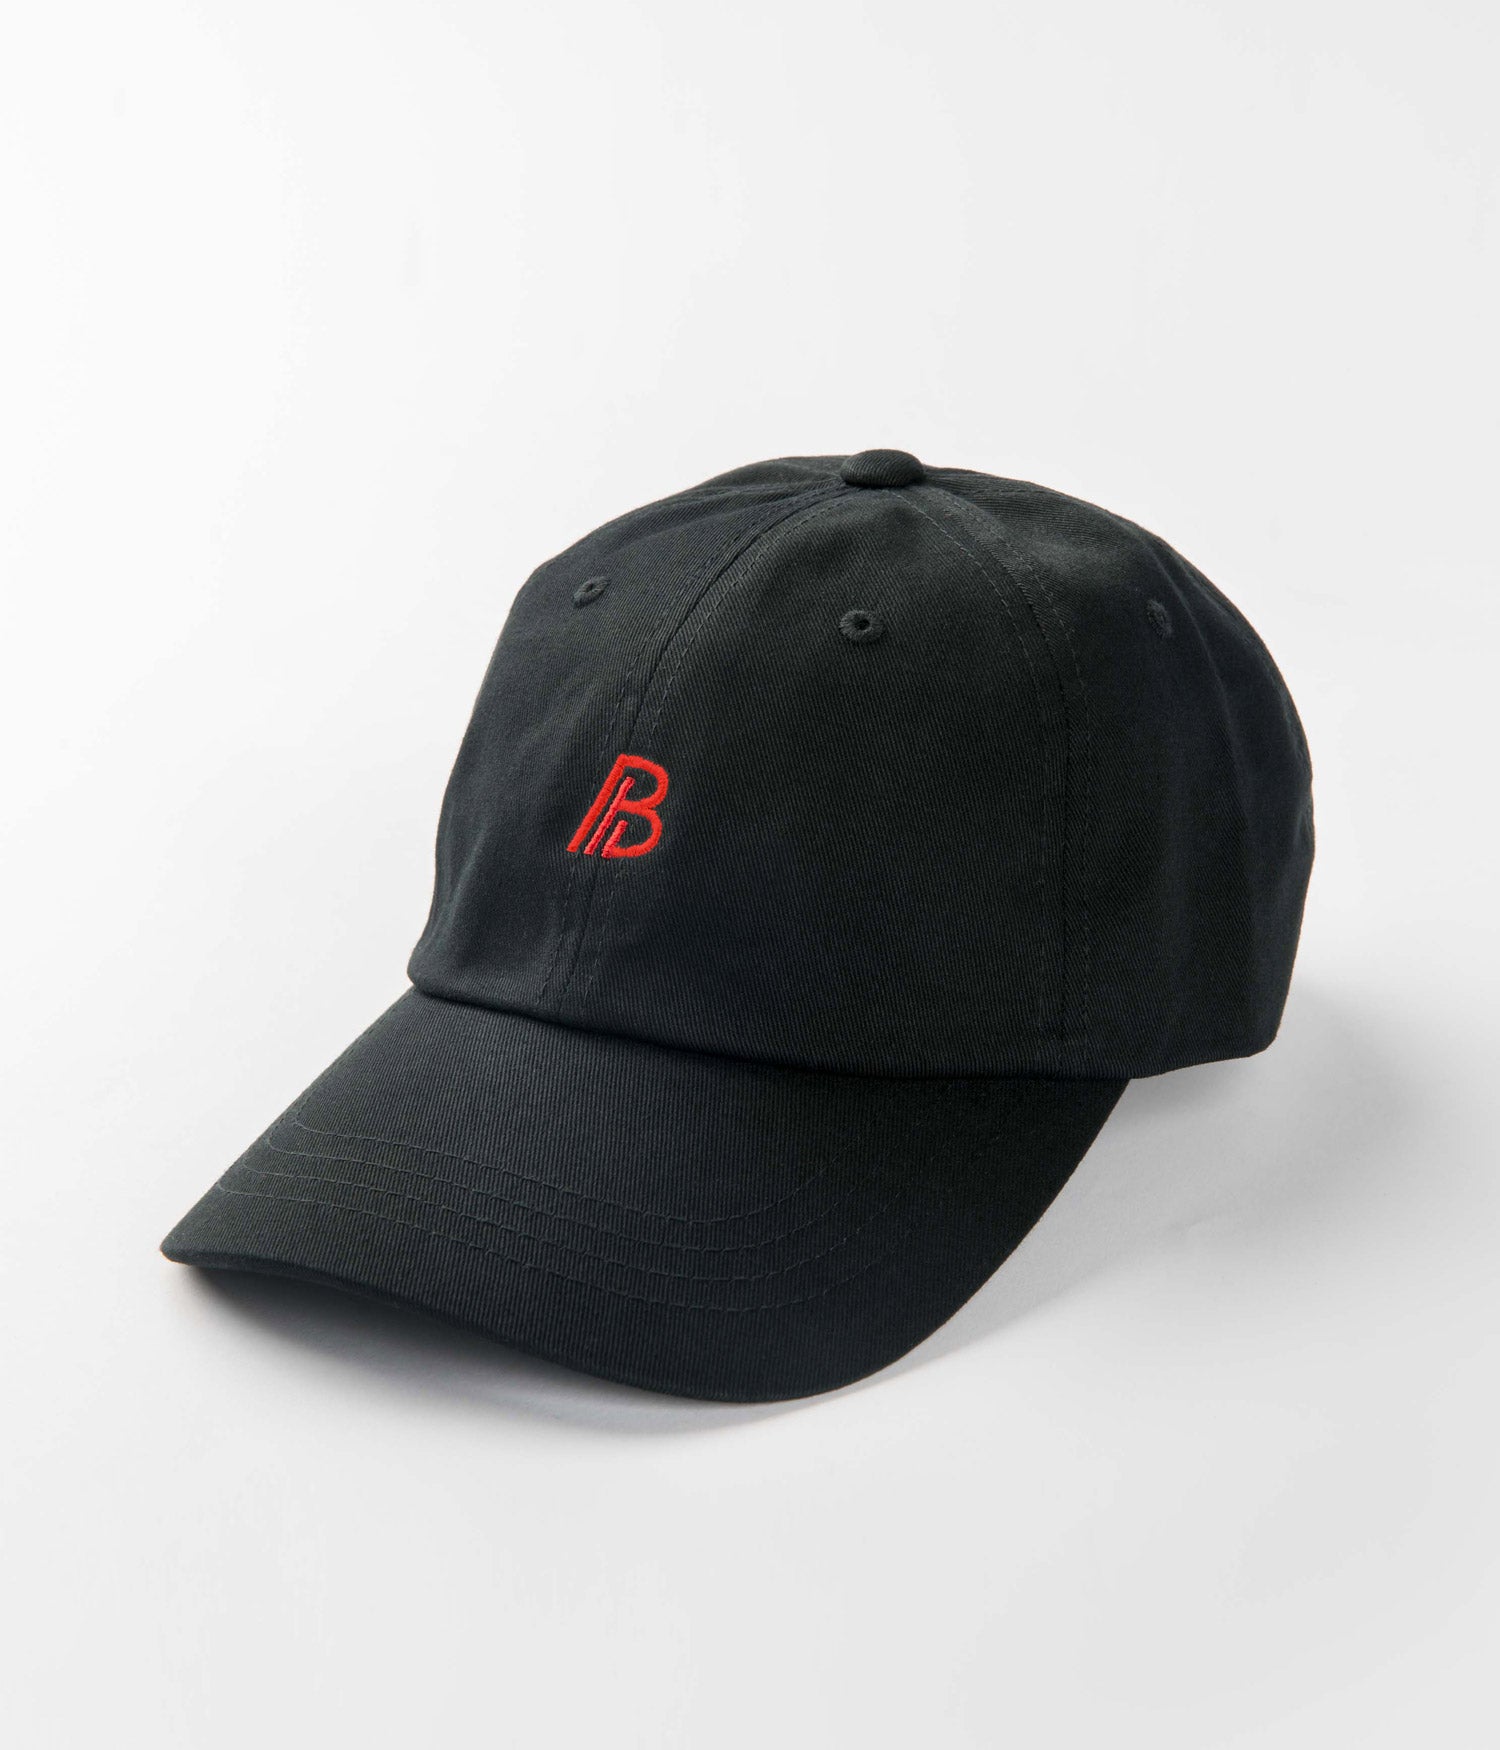 "B" Dad Hat - 4 colors